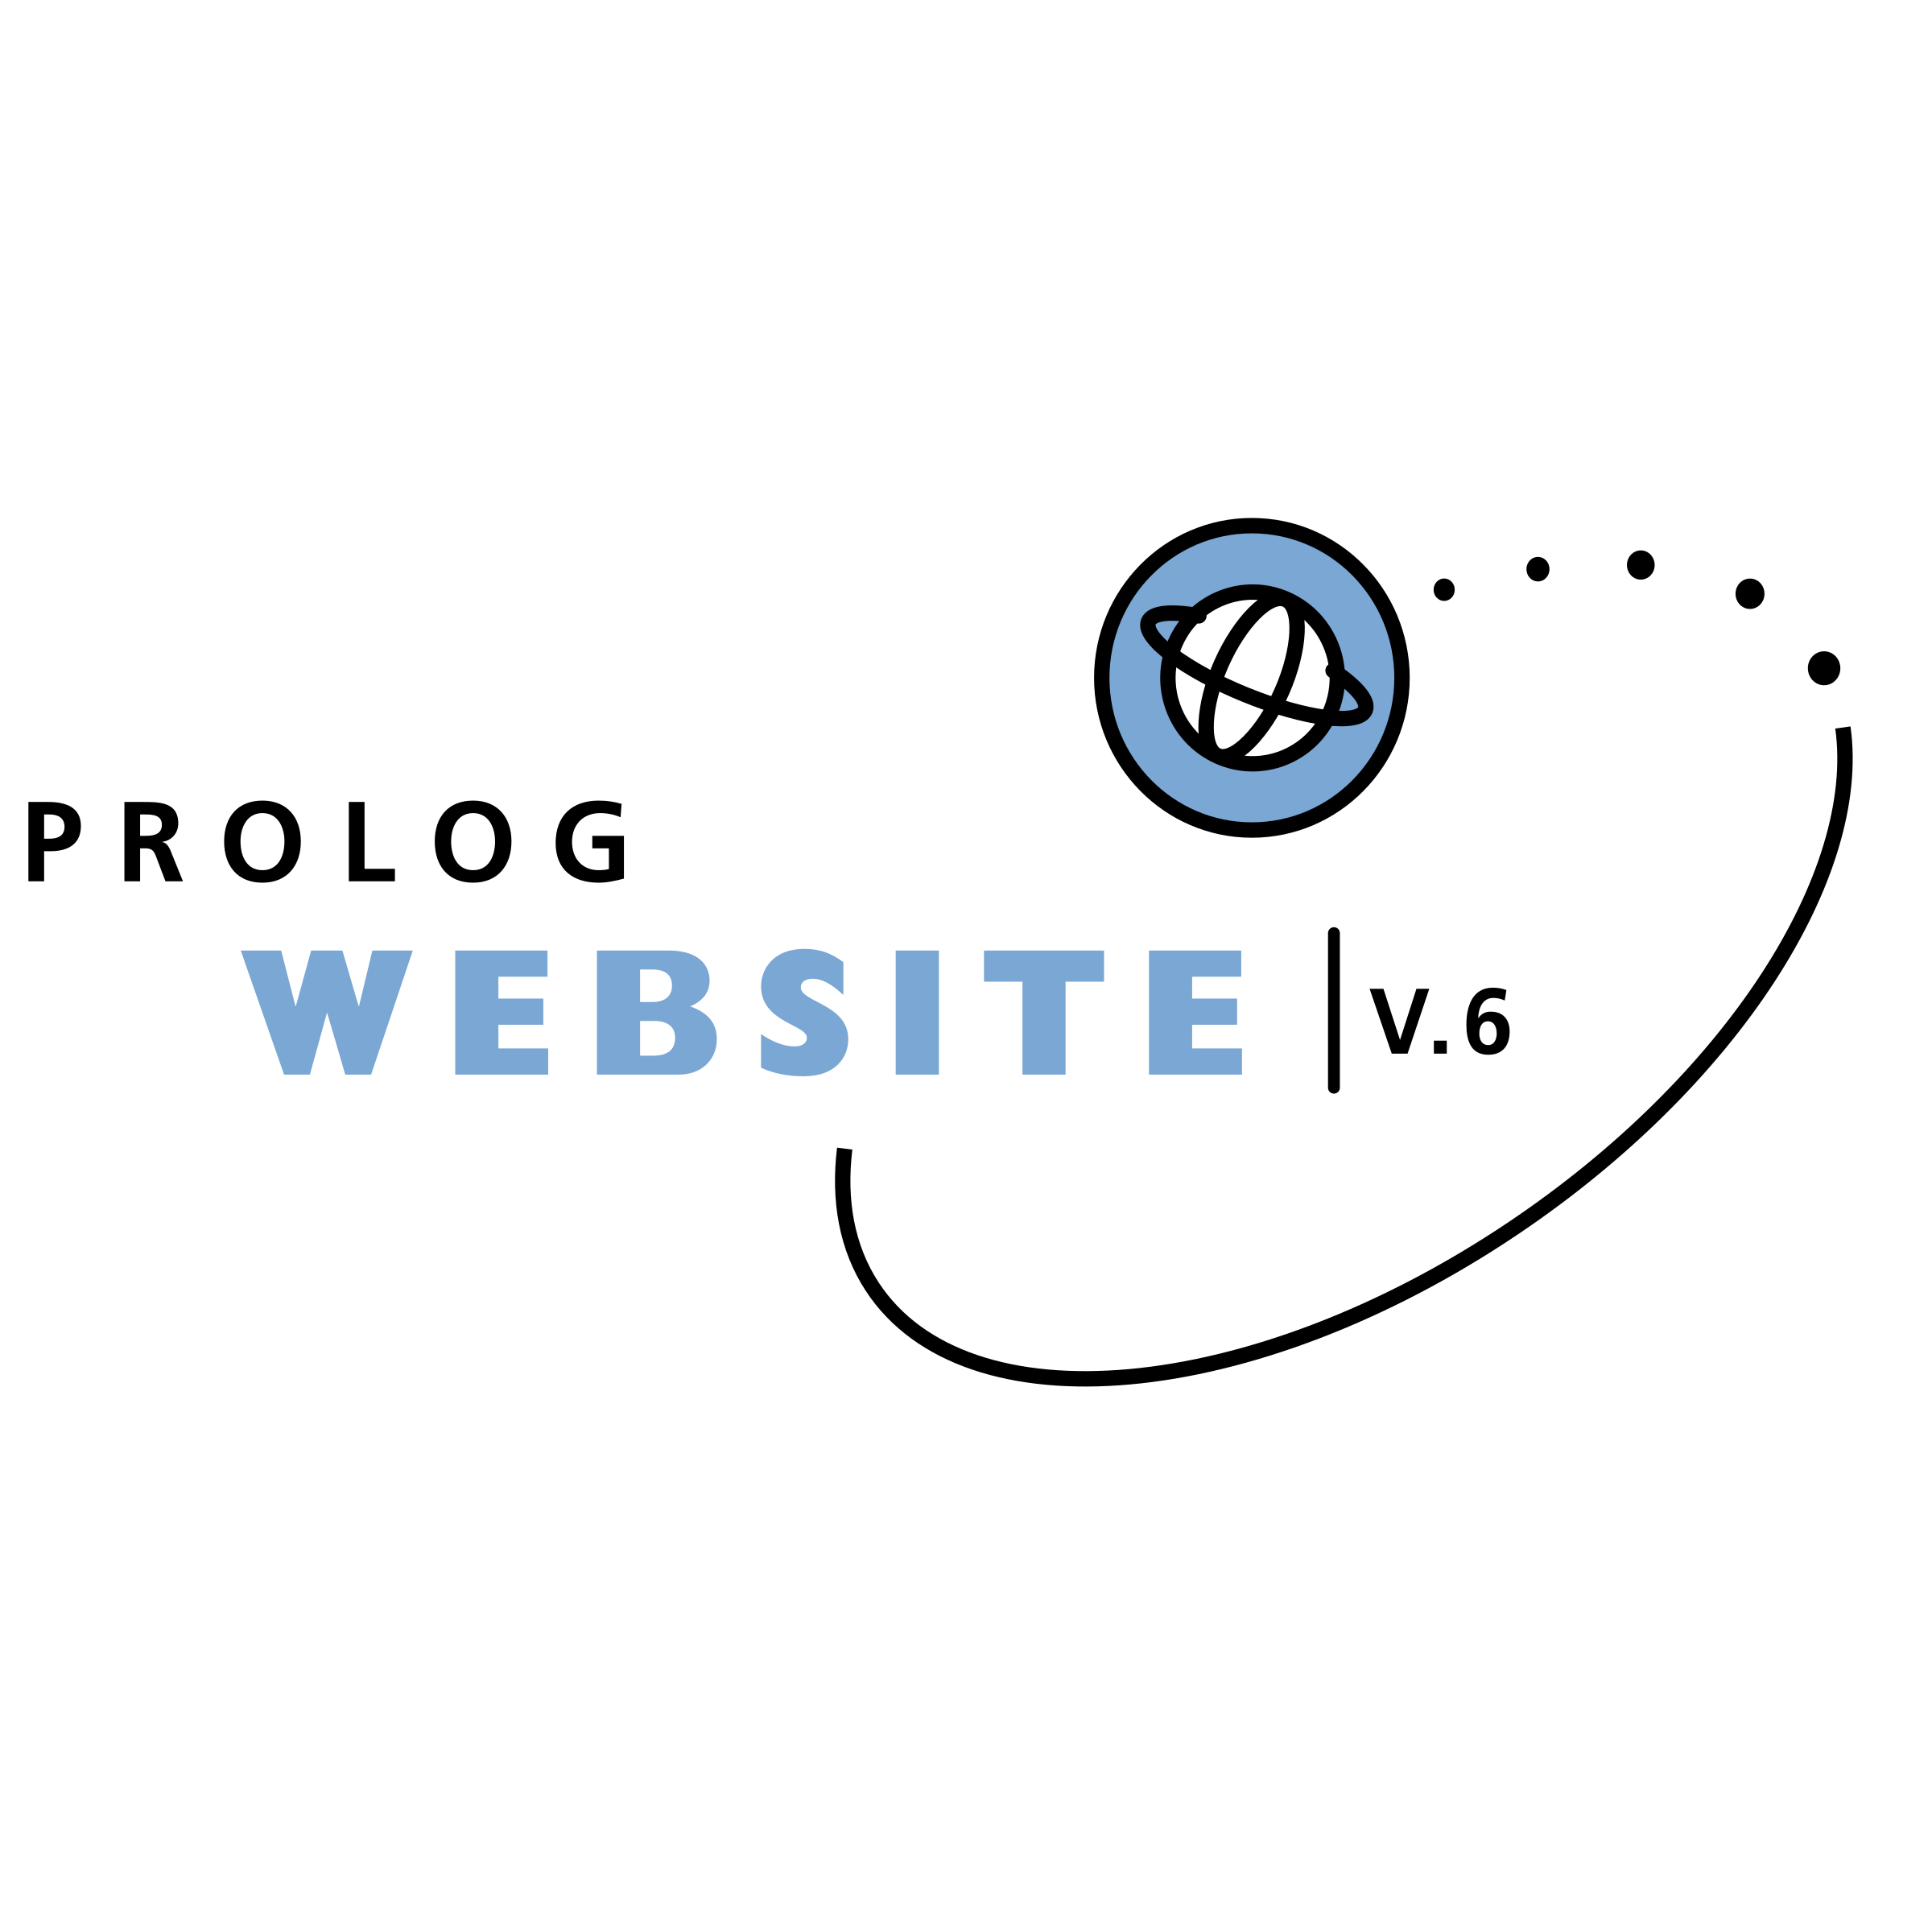 Prolog Logo - Prolog Website Logo PNG Transparent & SVG Vector - Freebie Supply